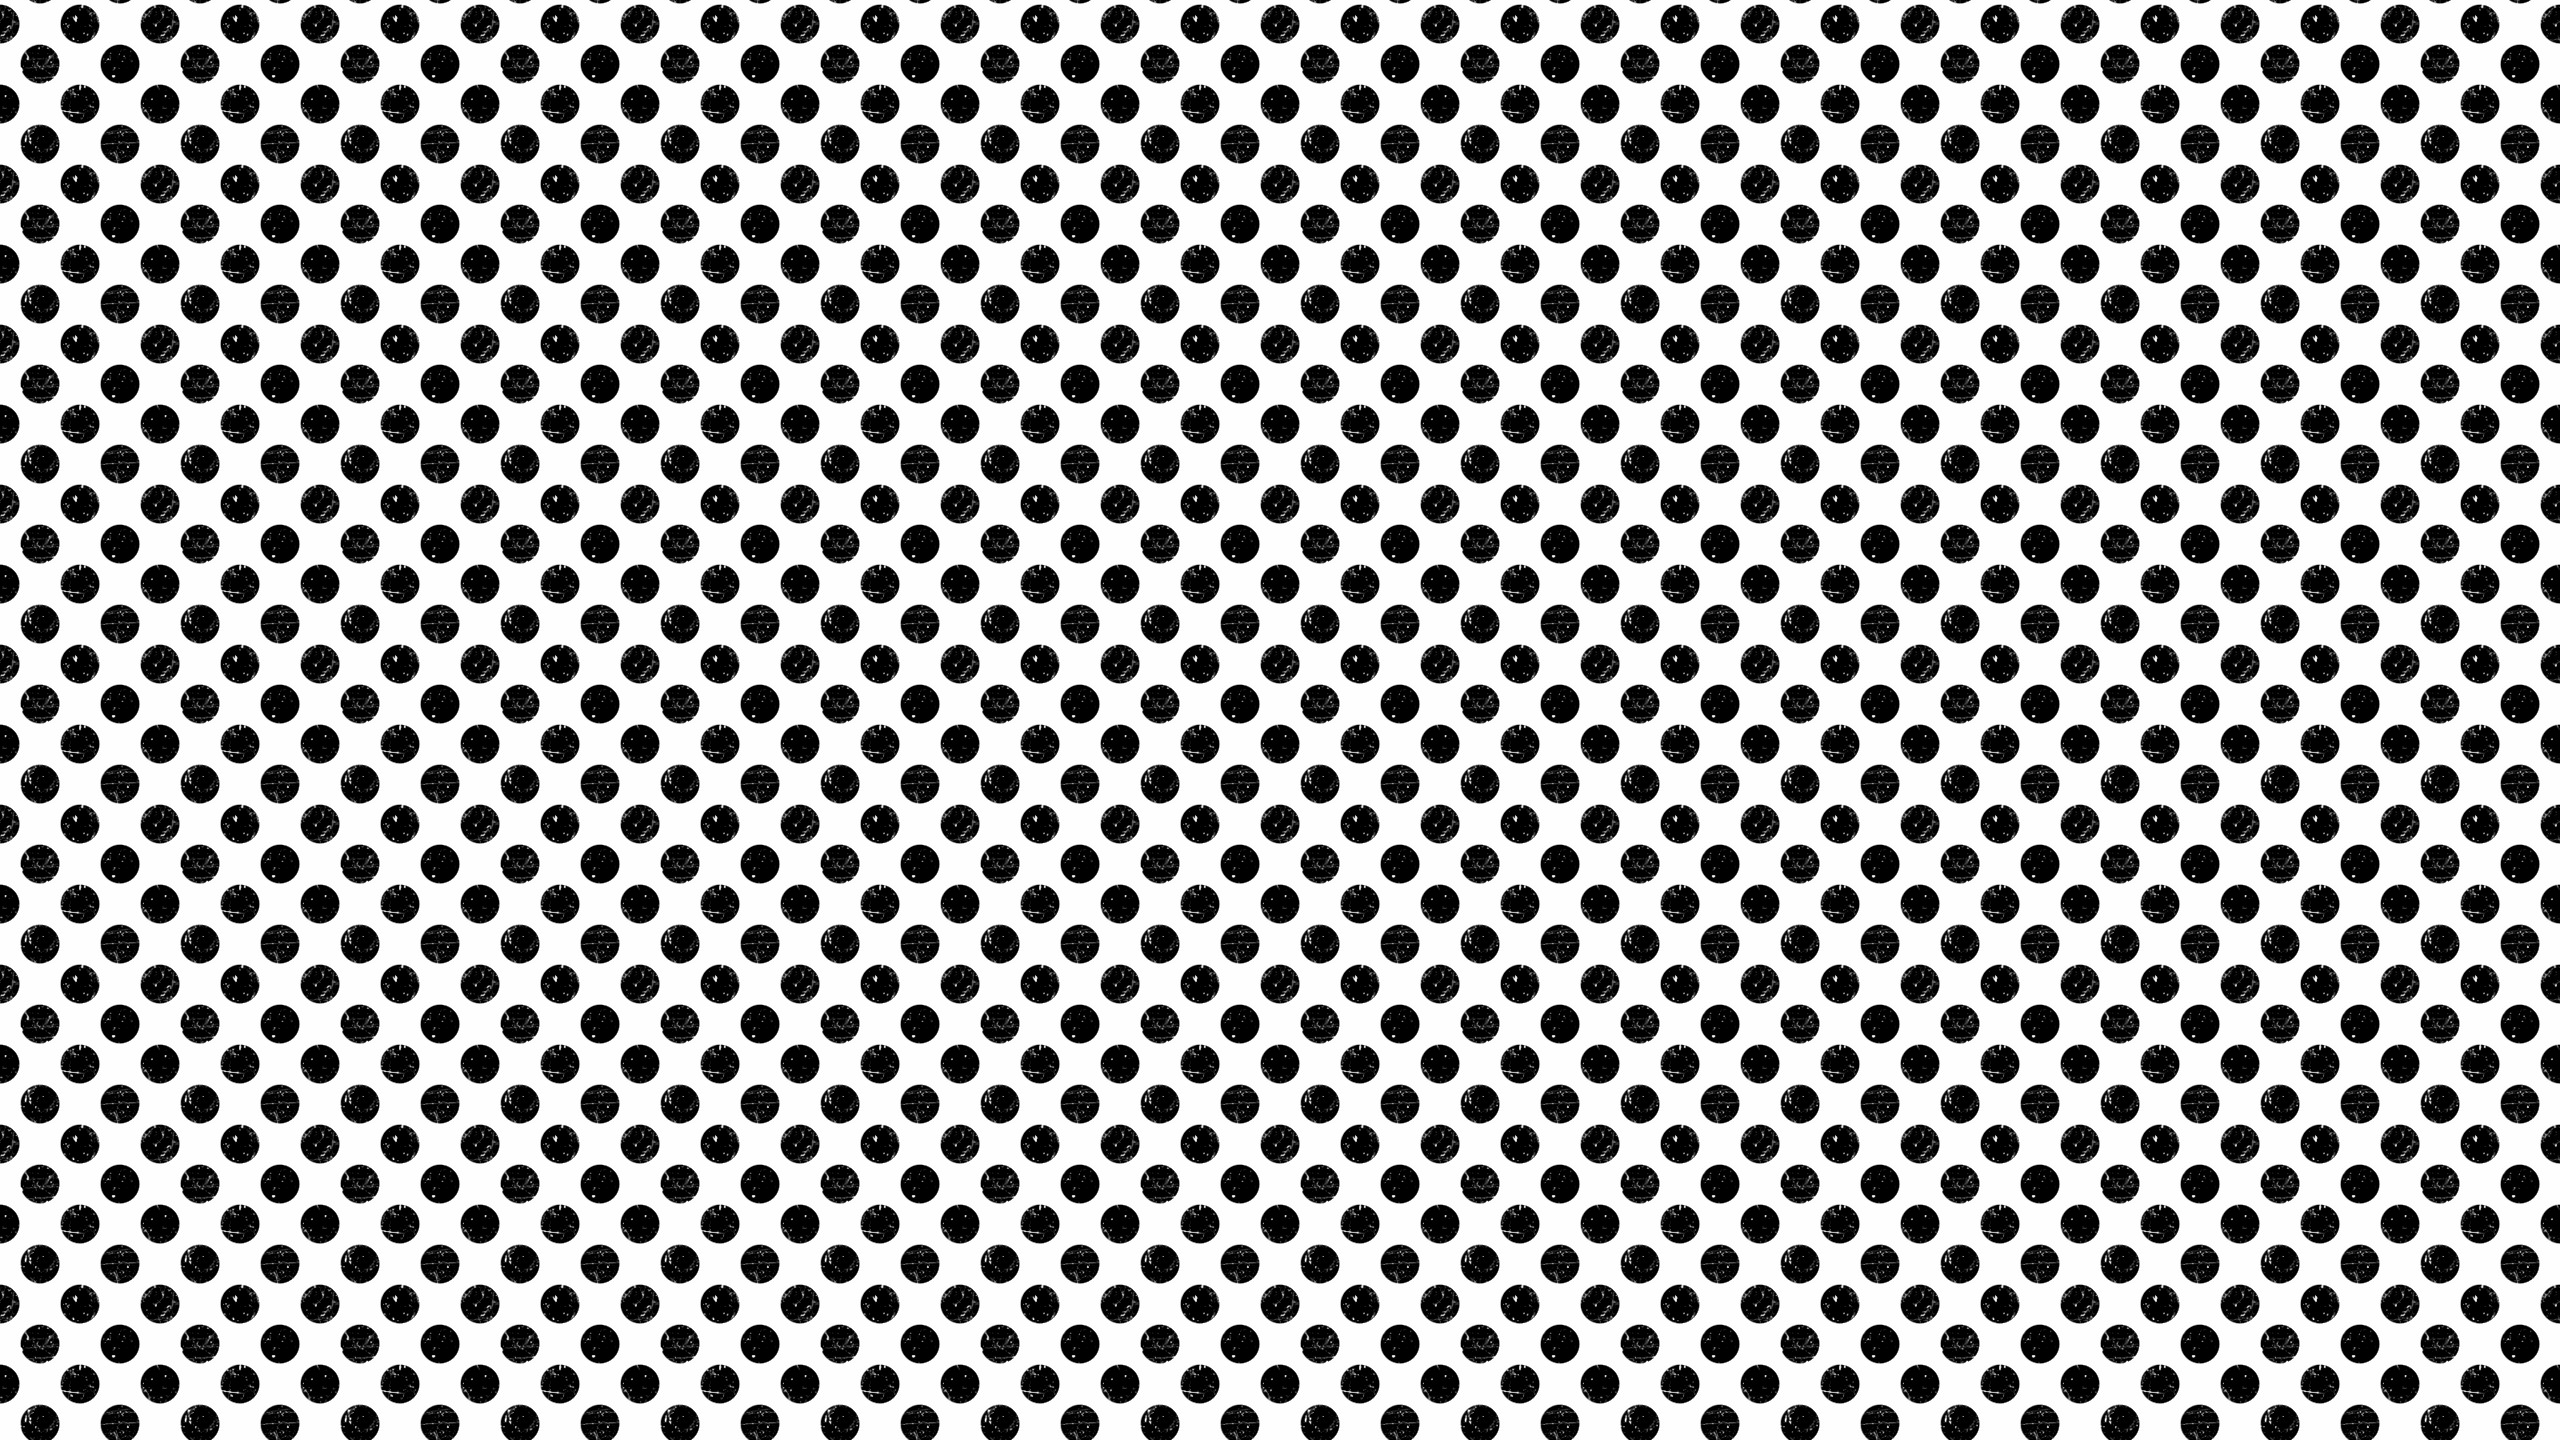 2560x1440 000000_trance-polka-dots.png